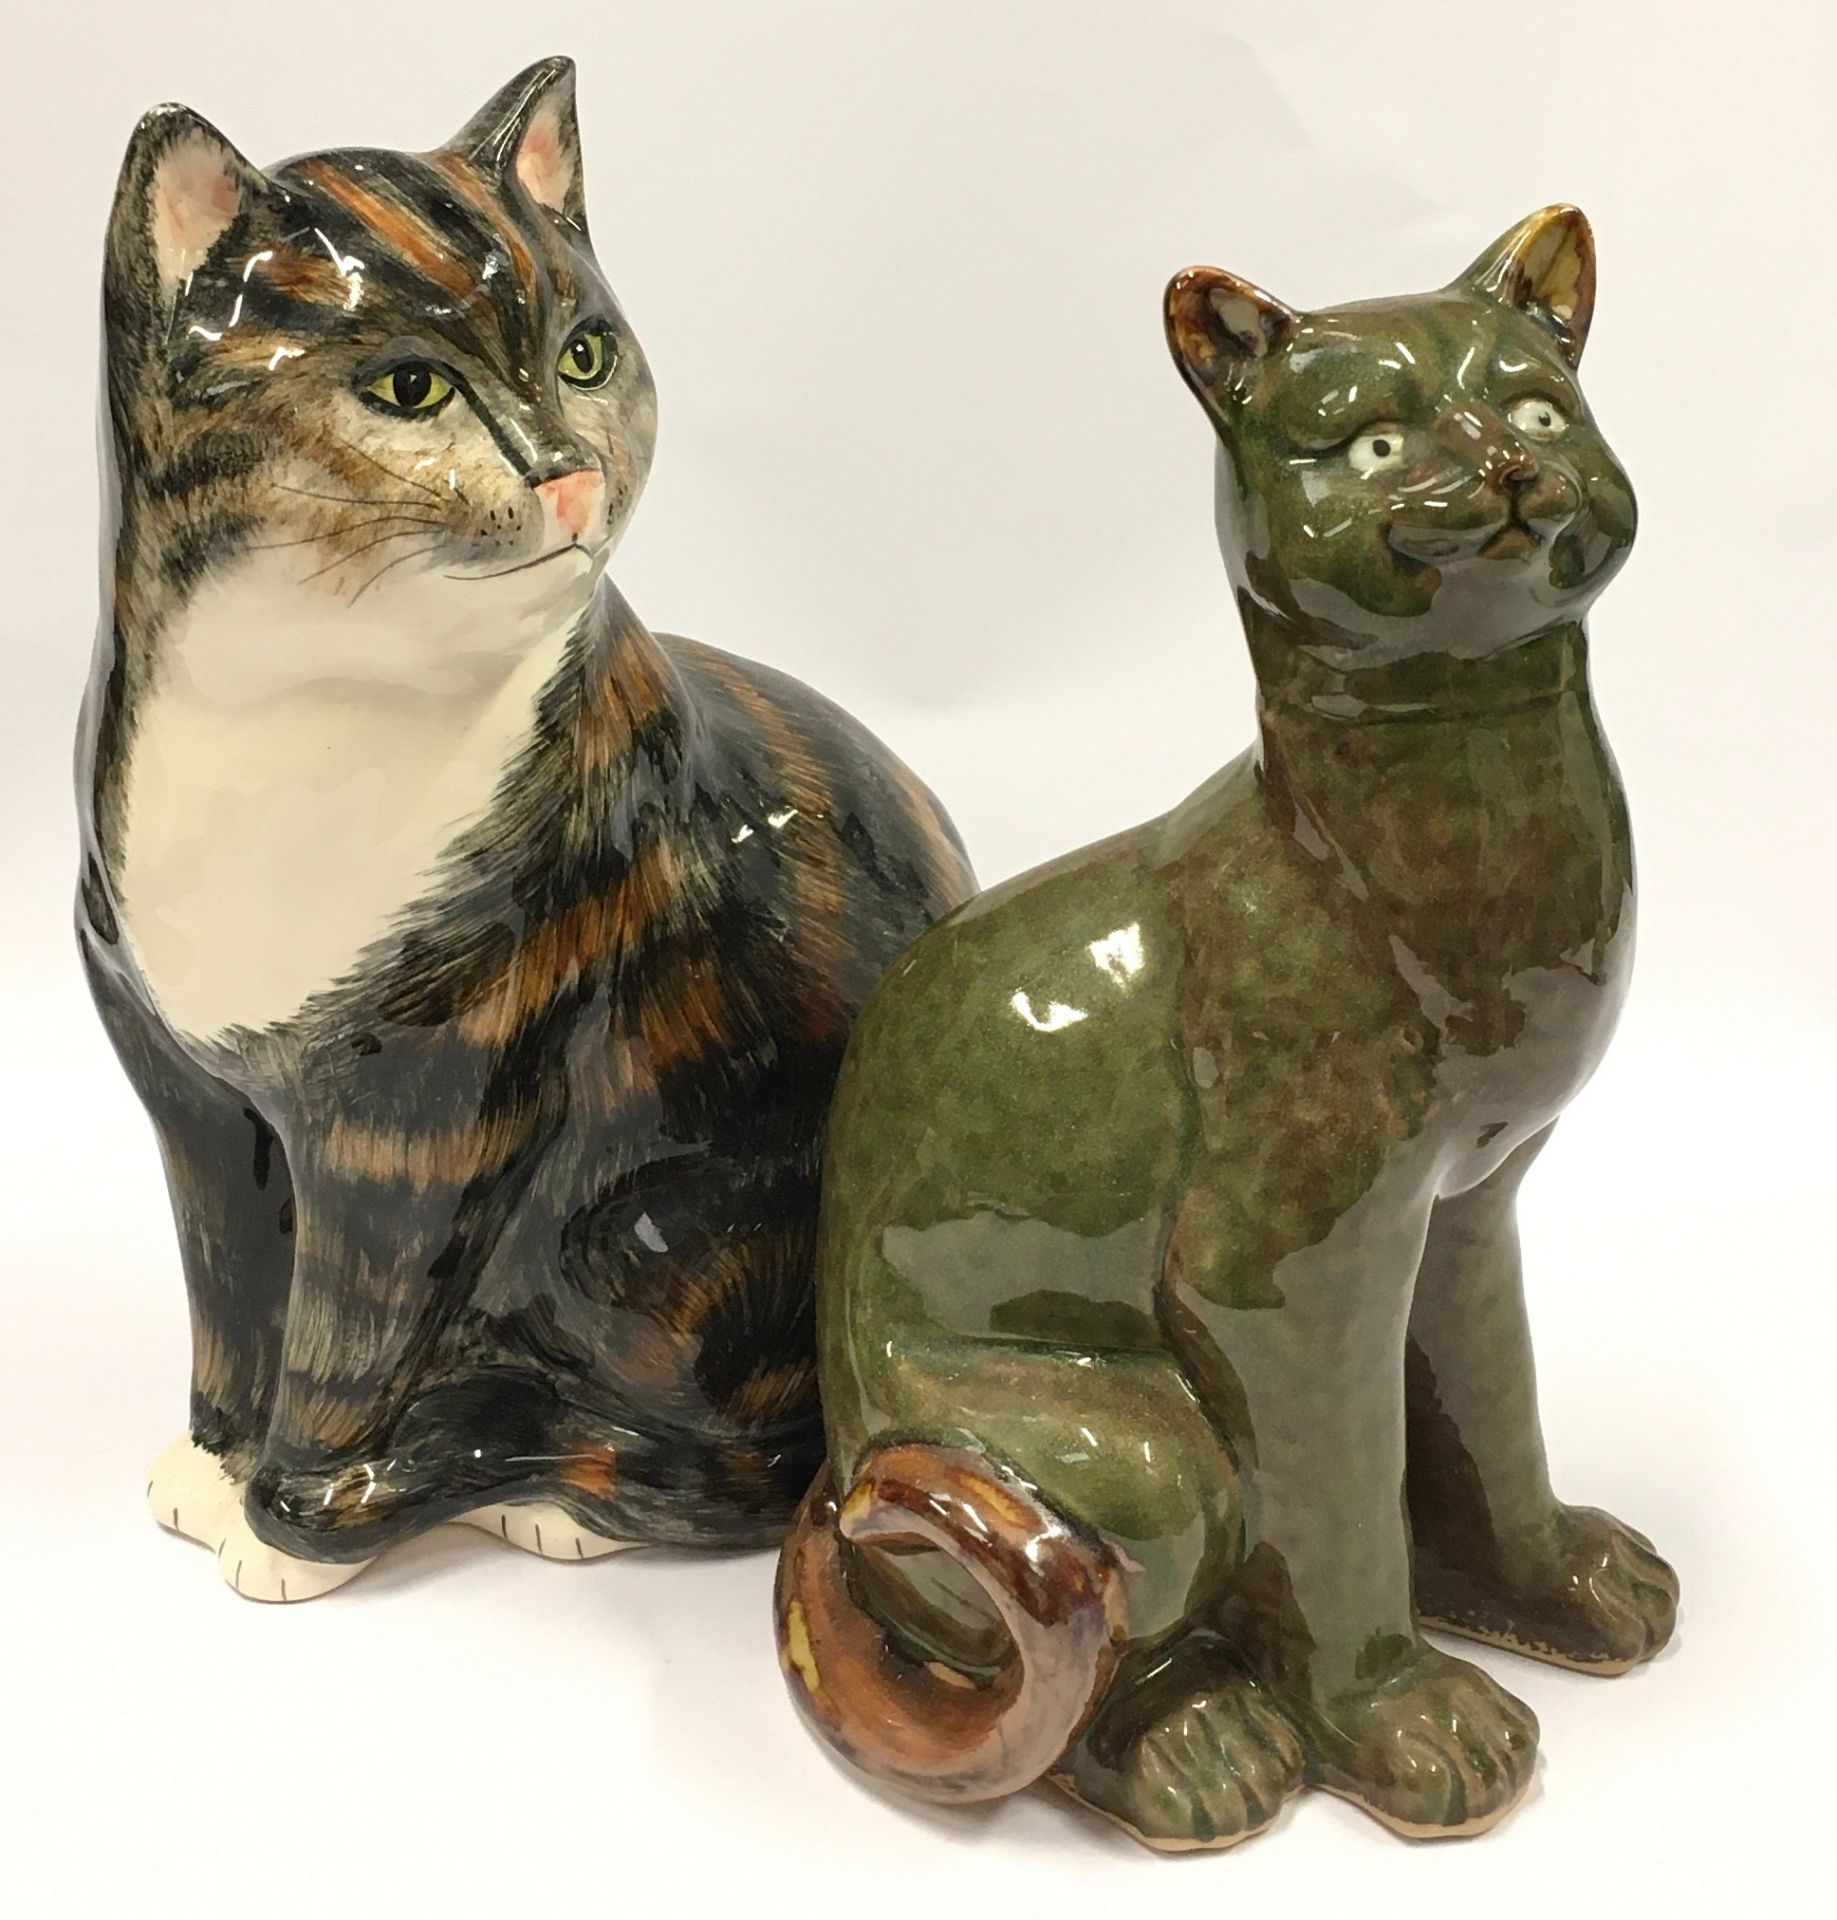 Two ceramic cat figurines the largest measuring 31cm.